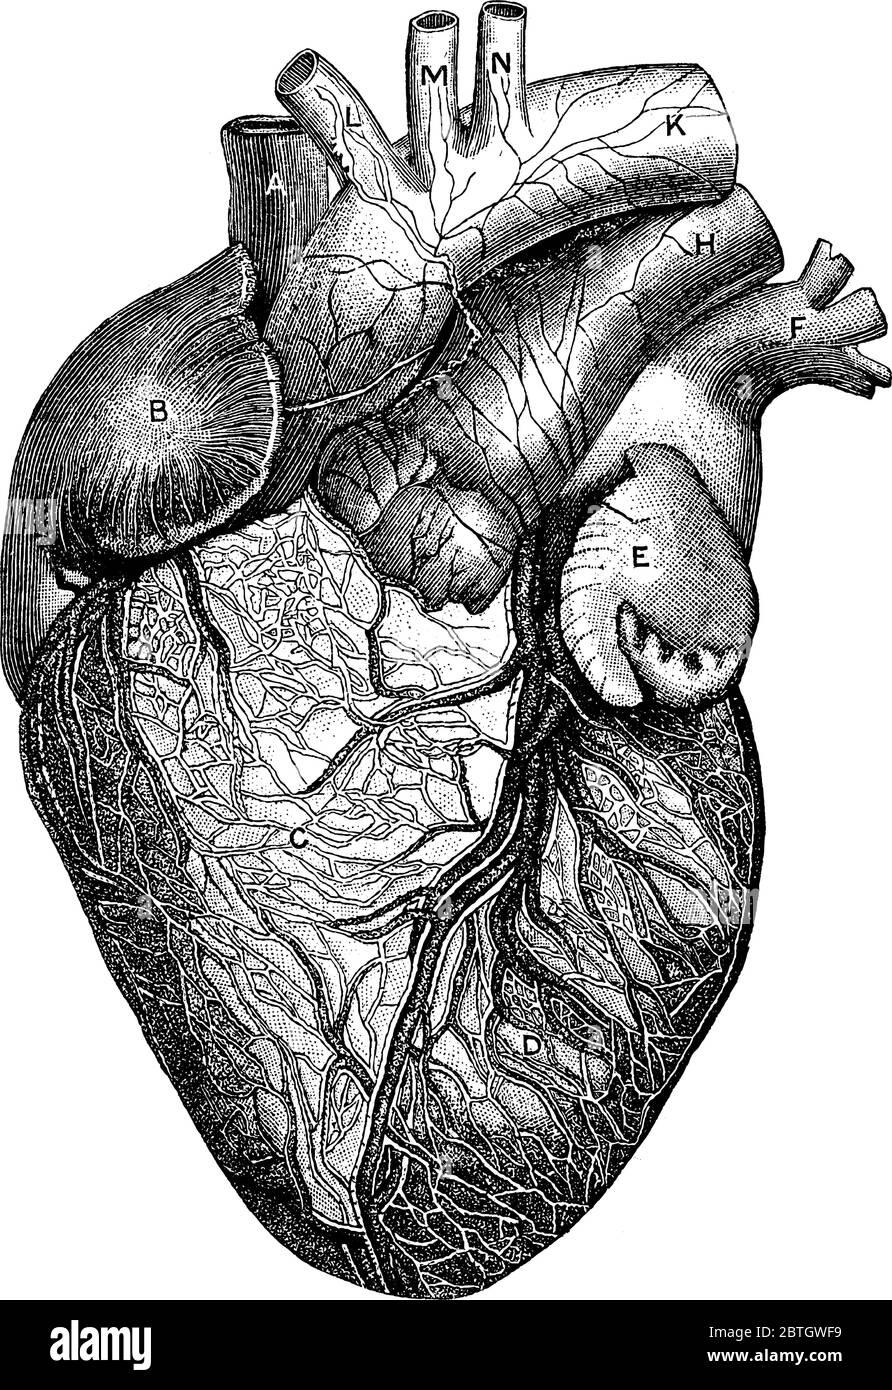 Die anteriore Ansicht des Herzens, mit den Teilen, A, Vena Cava Superior; B, rechte Ohrmuschel; C, rechte Herzkammer; D linke Herzkammer; E, linke Ohrmuschel; F pulm Stock Vektor